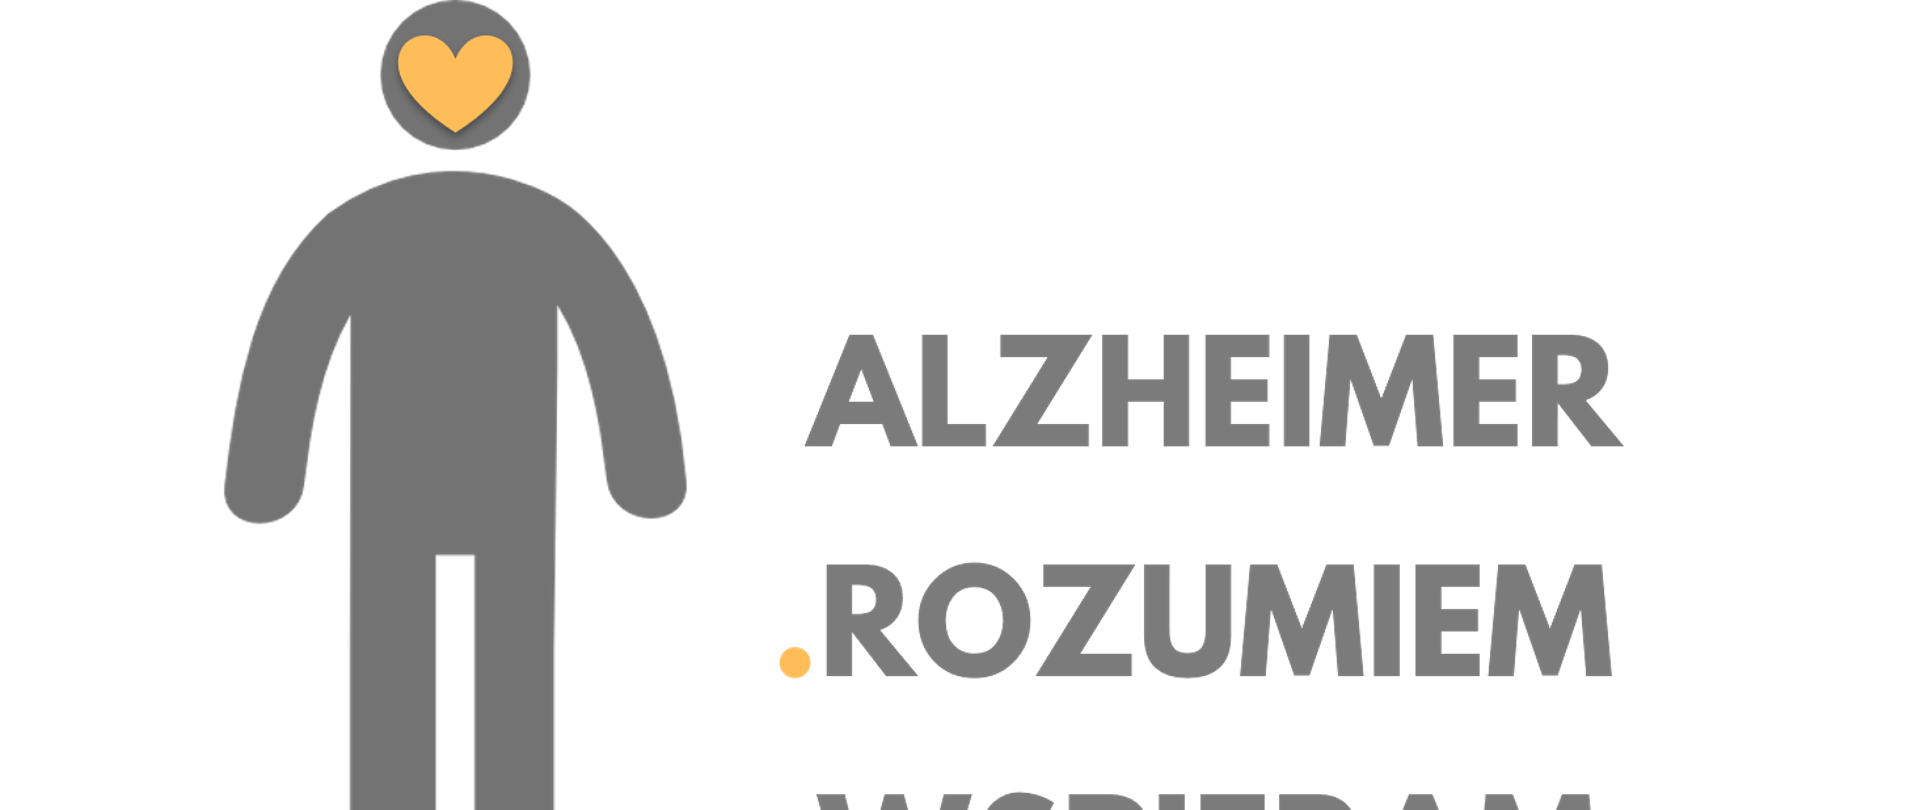 LOGO Alzheimer - rozumiem - wspieram